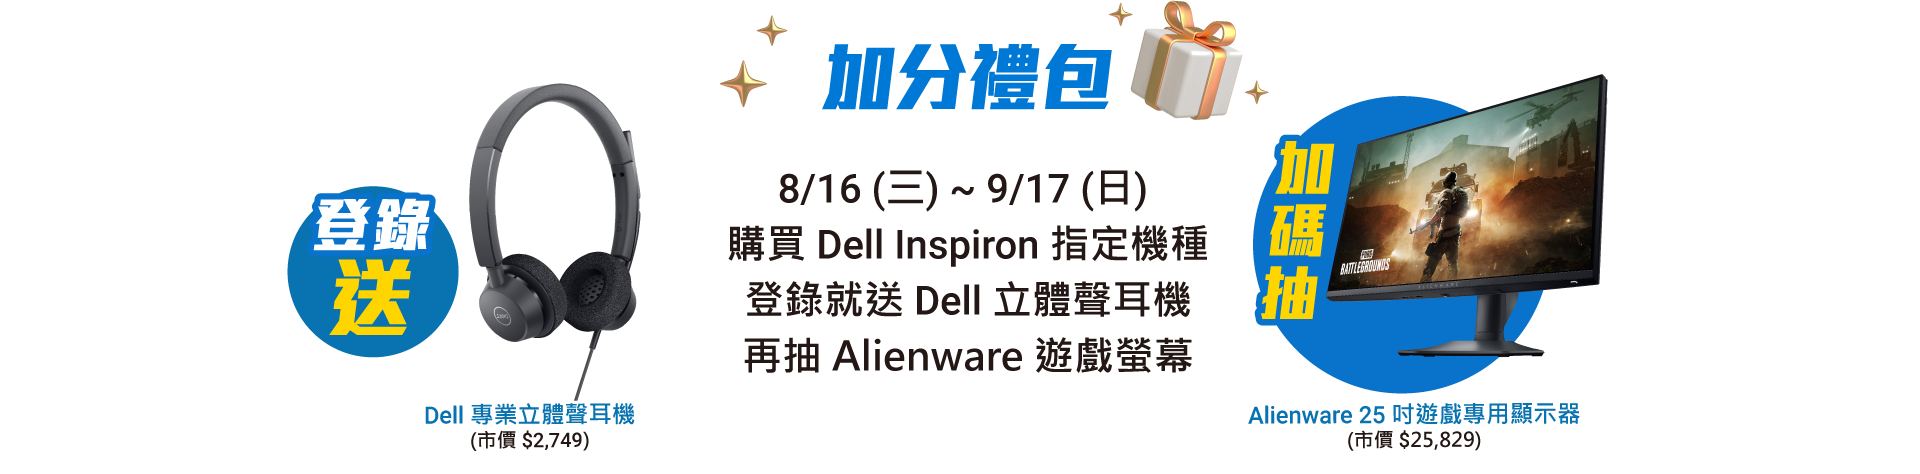 加分禮包 8/16 (三) ~ 9/17 (日)  購買 Dell Inspiron 指定機種 登錄就送 Dell 立體聲耳機，再抽 Alienware 遊戲螢幕